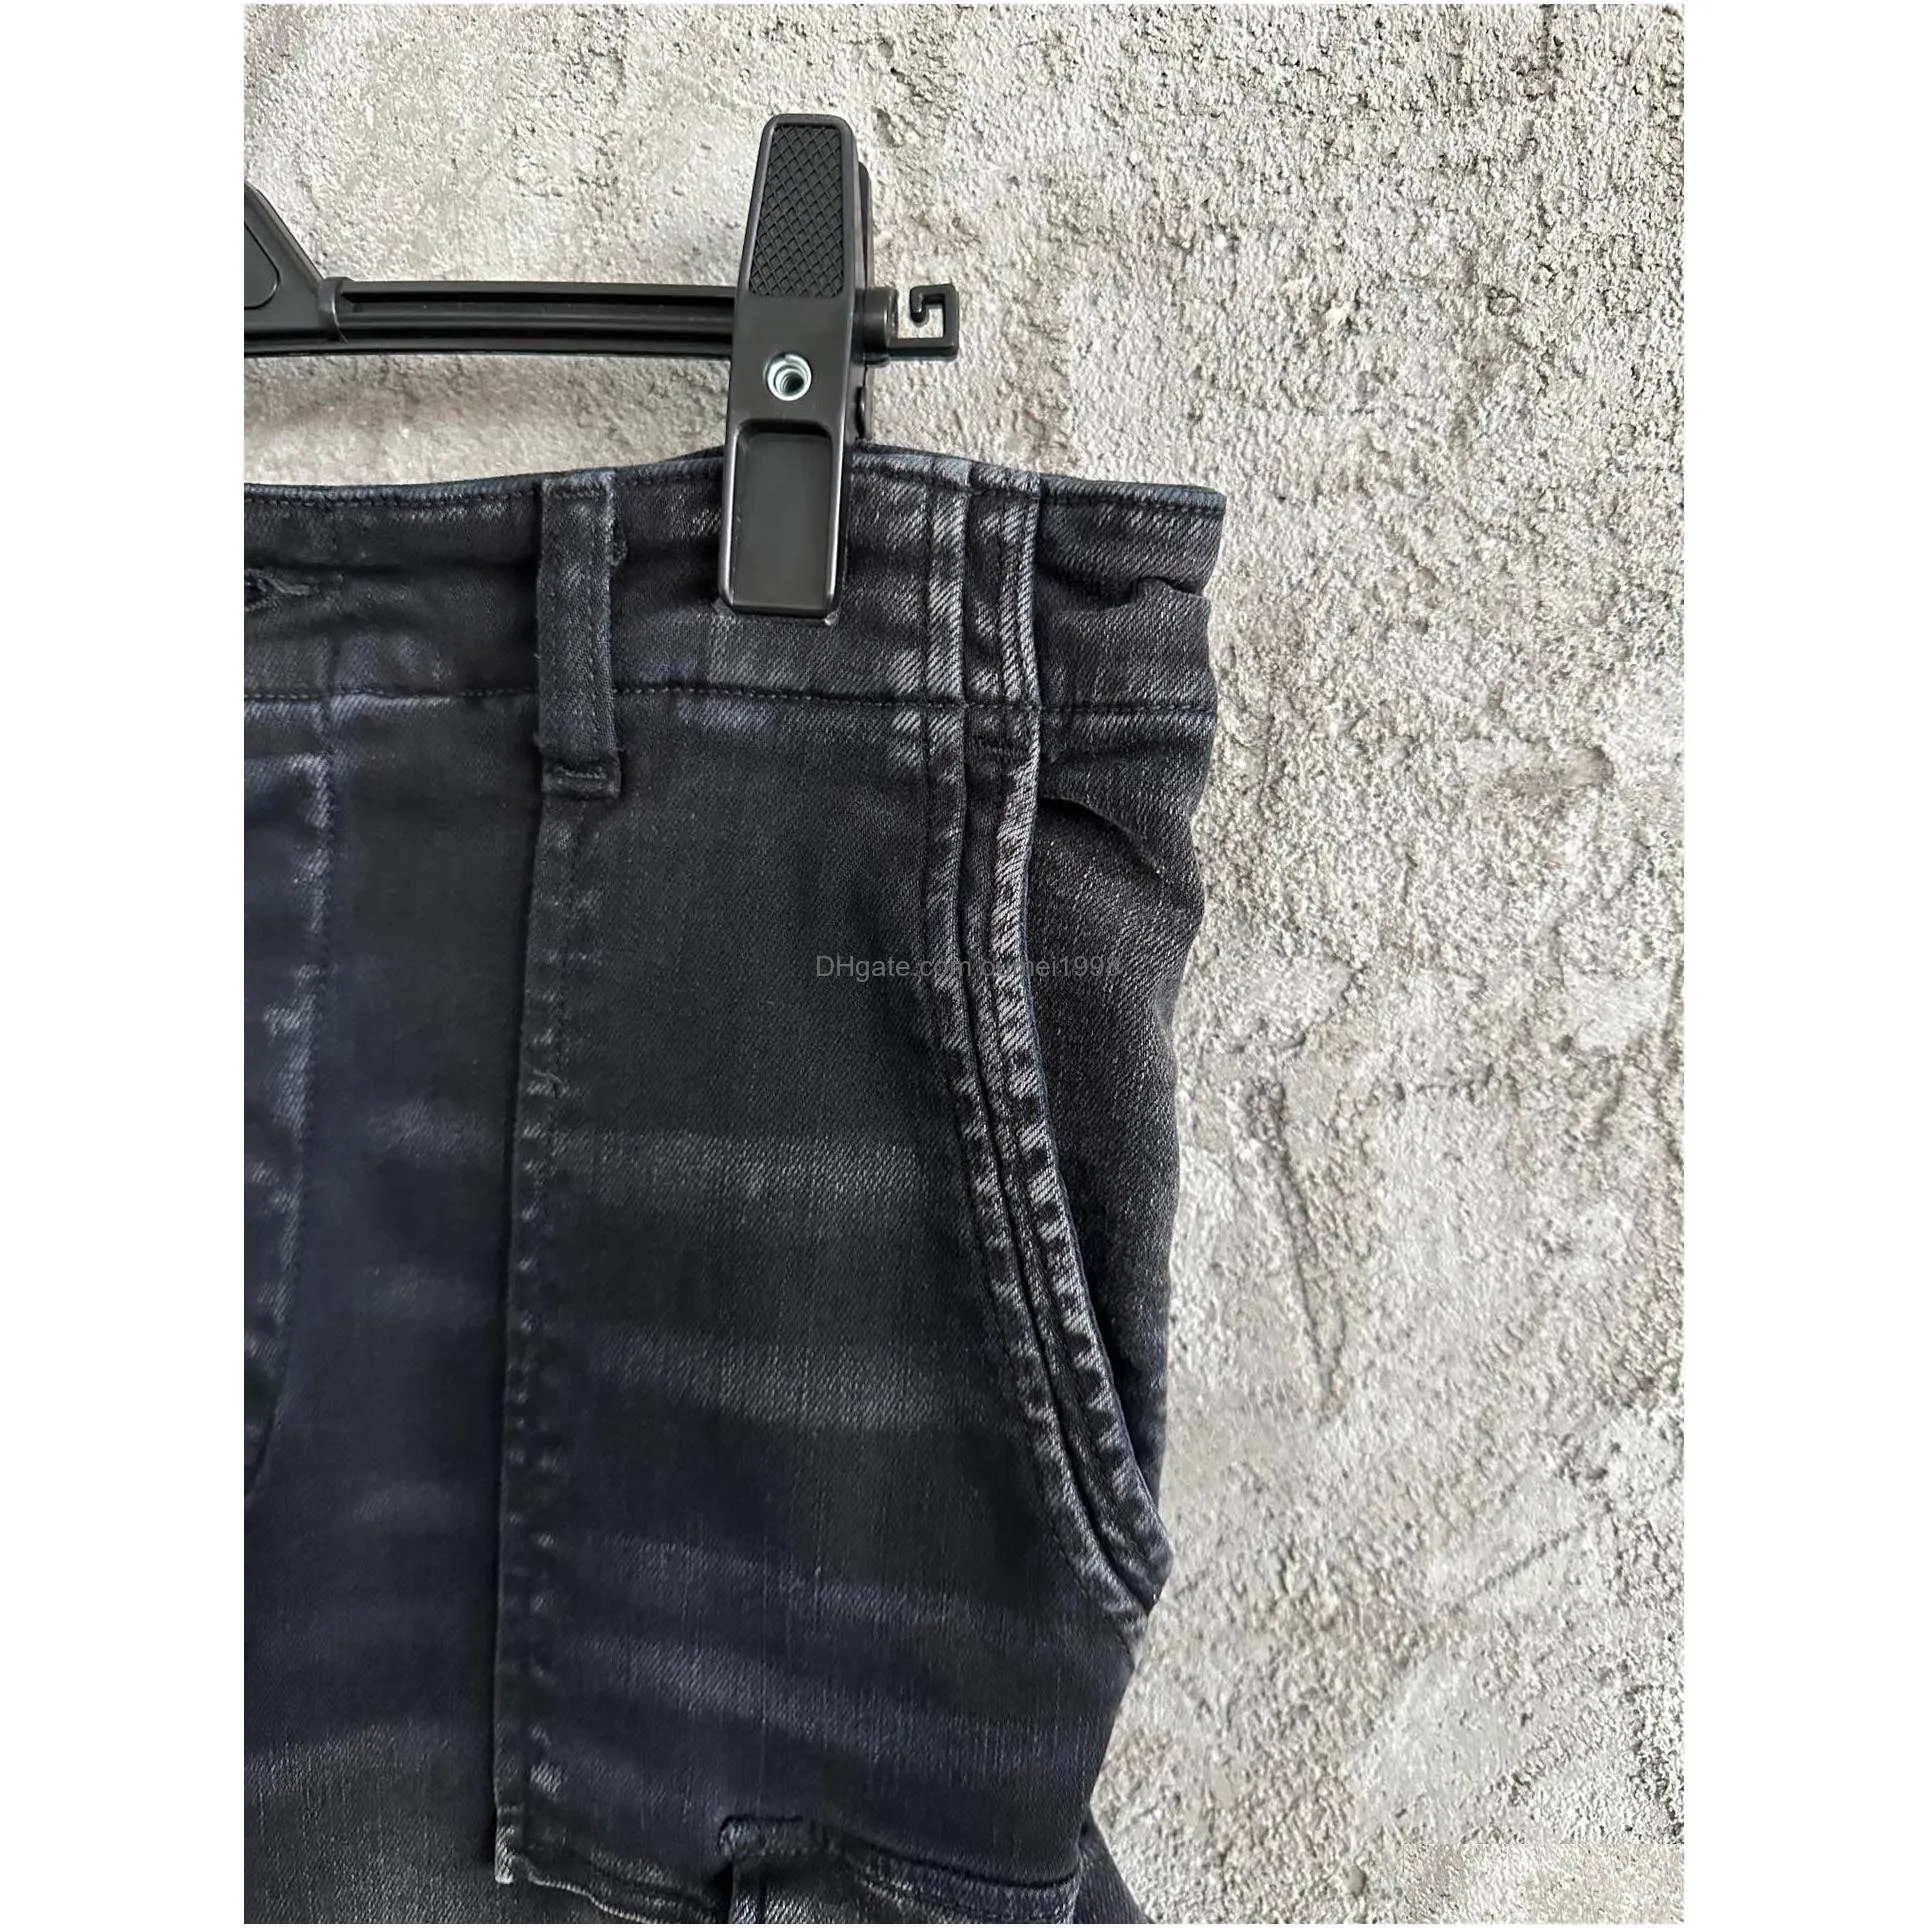  model mens pocket decoration jeans us size 28 - 36 high quality men s designer jeans